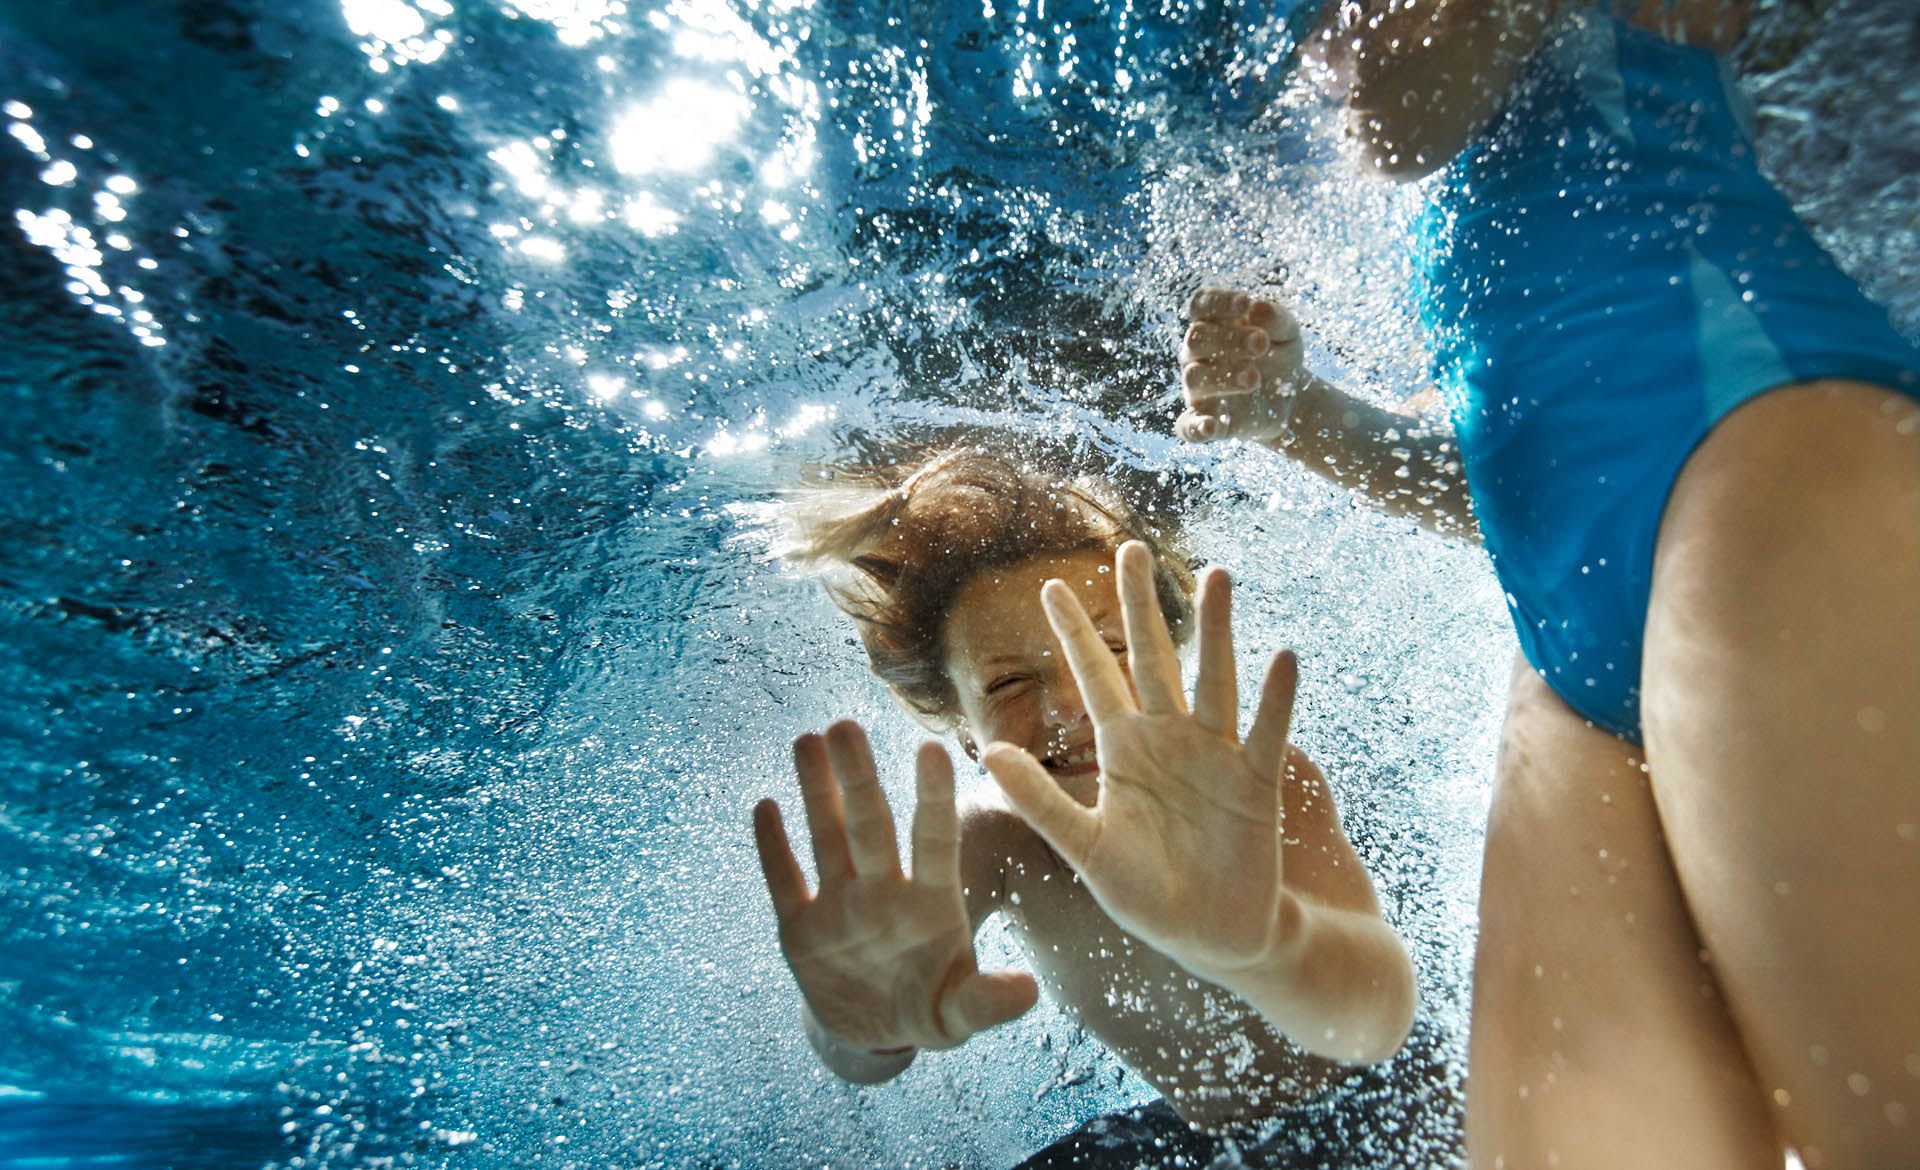 Lebendige unterwasser Fotografie voller Spaß | Karsten Koch